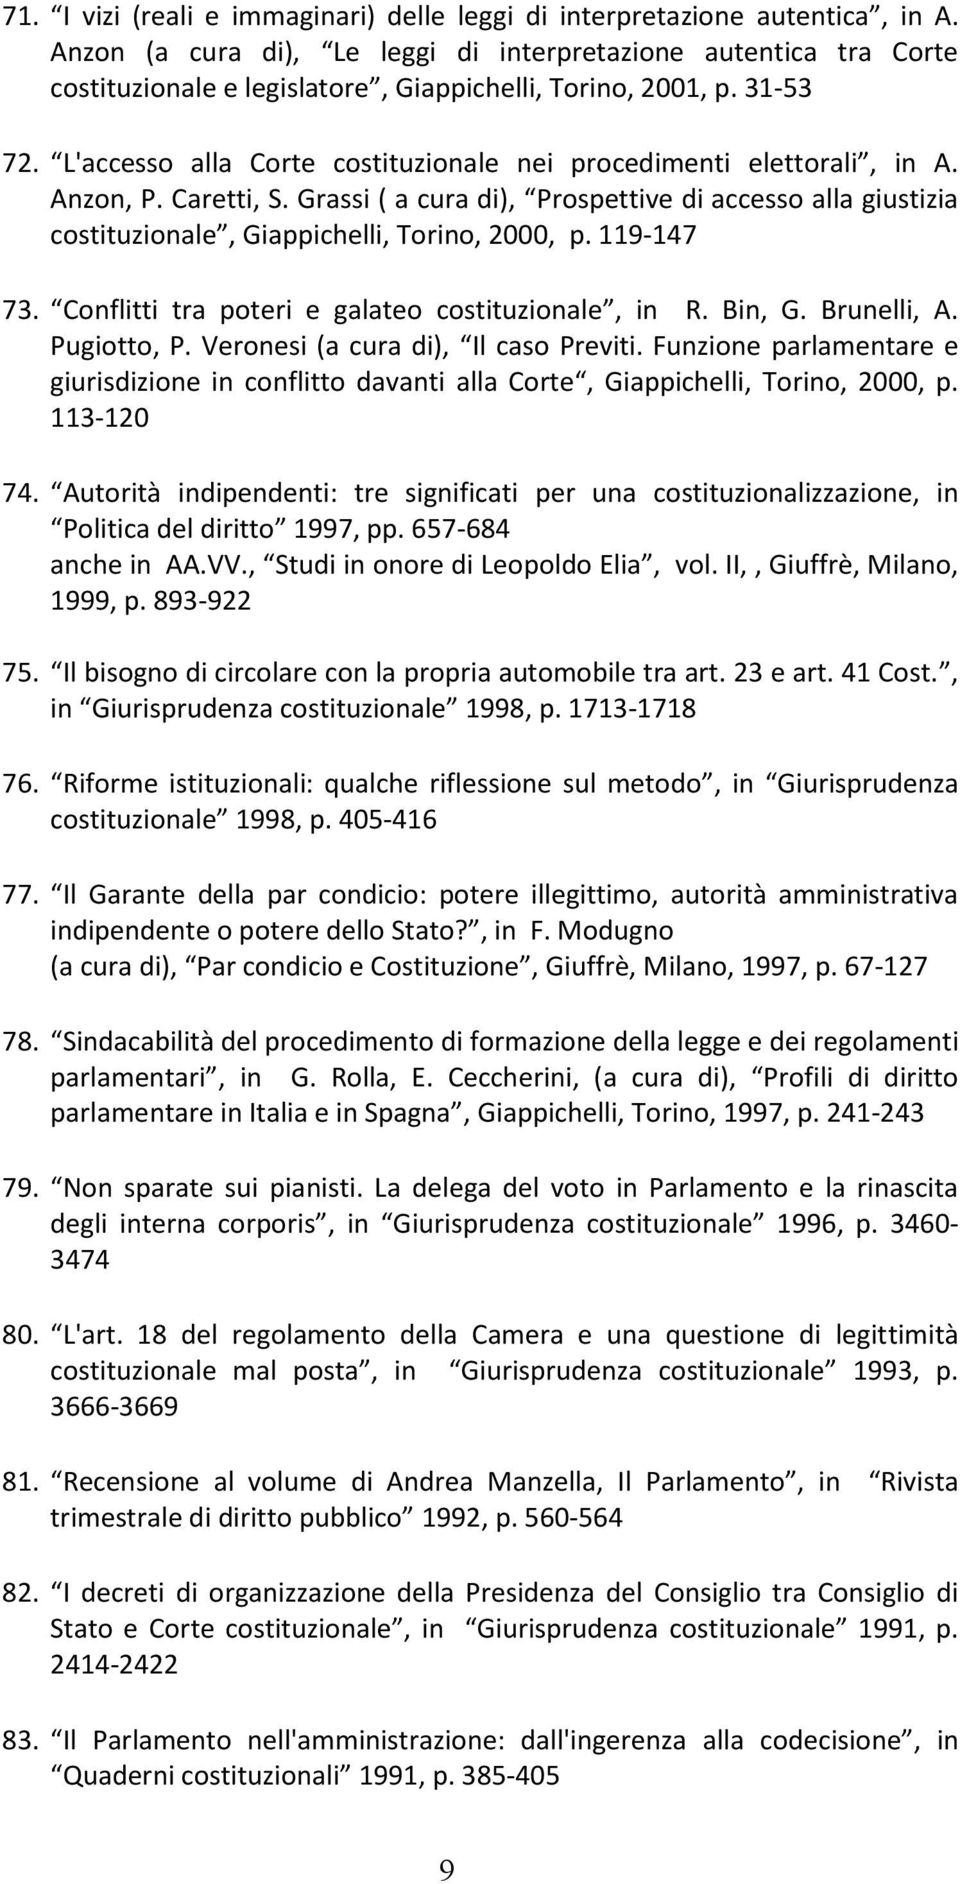 L'accesso alla Corte costituzionale nei procedimenti elettorali, in A. Anzon, P. Caretti, S. Grassi ( a cura di), Prospettive di accesso alla giustizia costituzionale, Giappichelli, Torino, 2000, p.